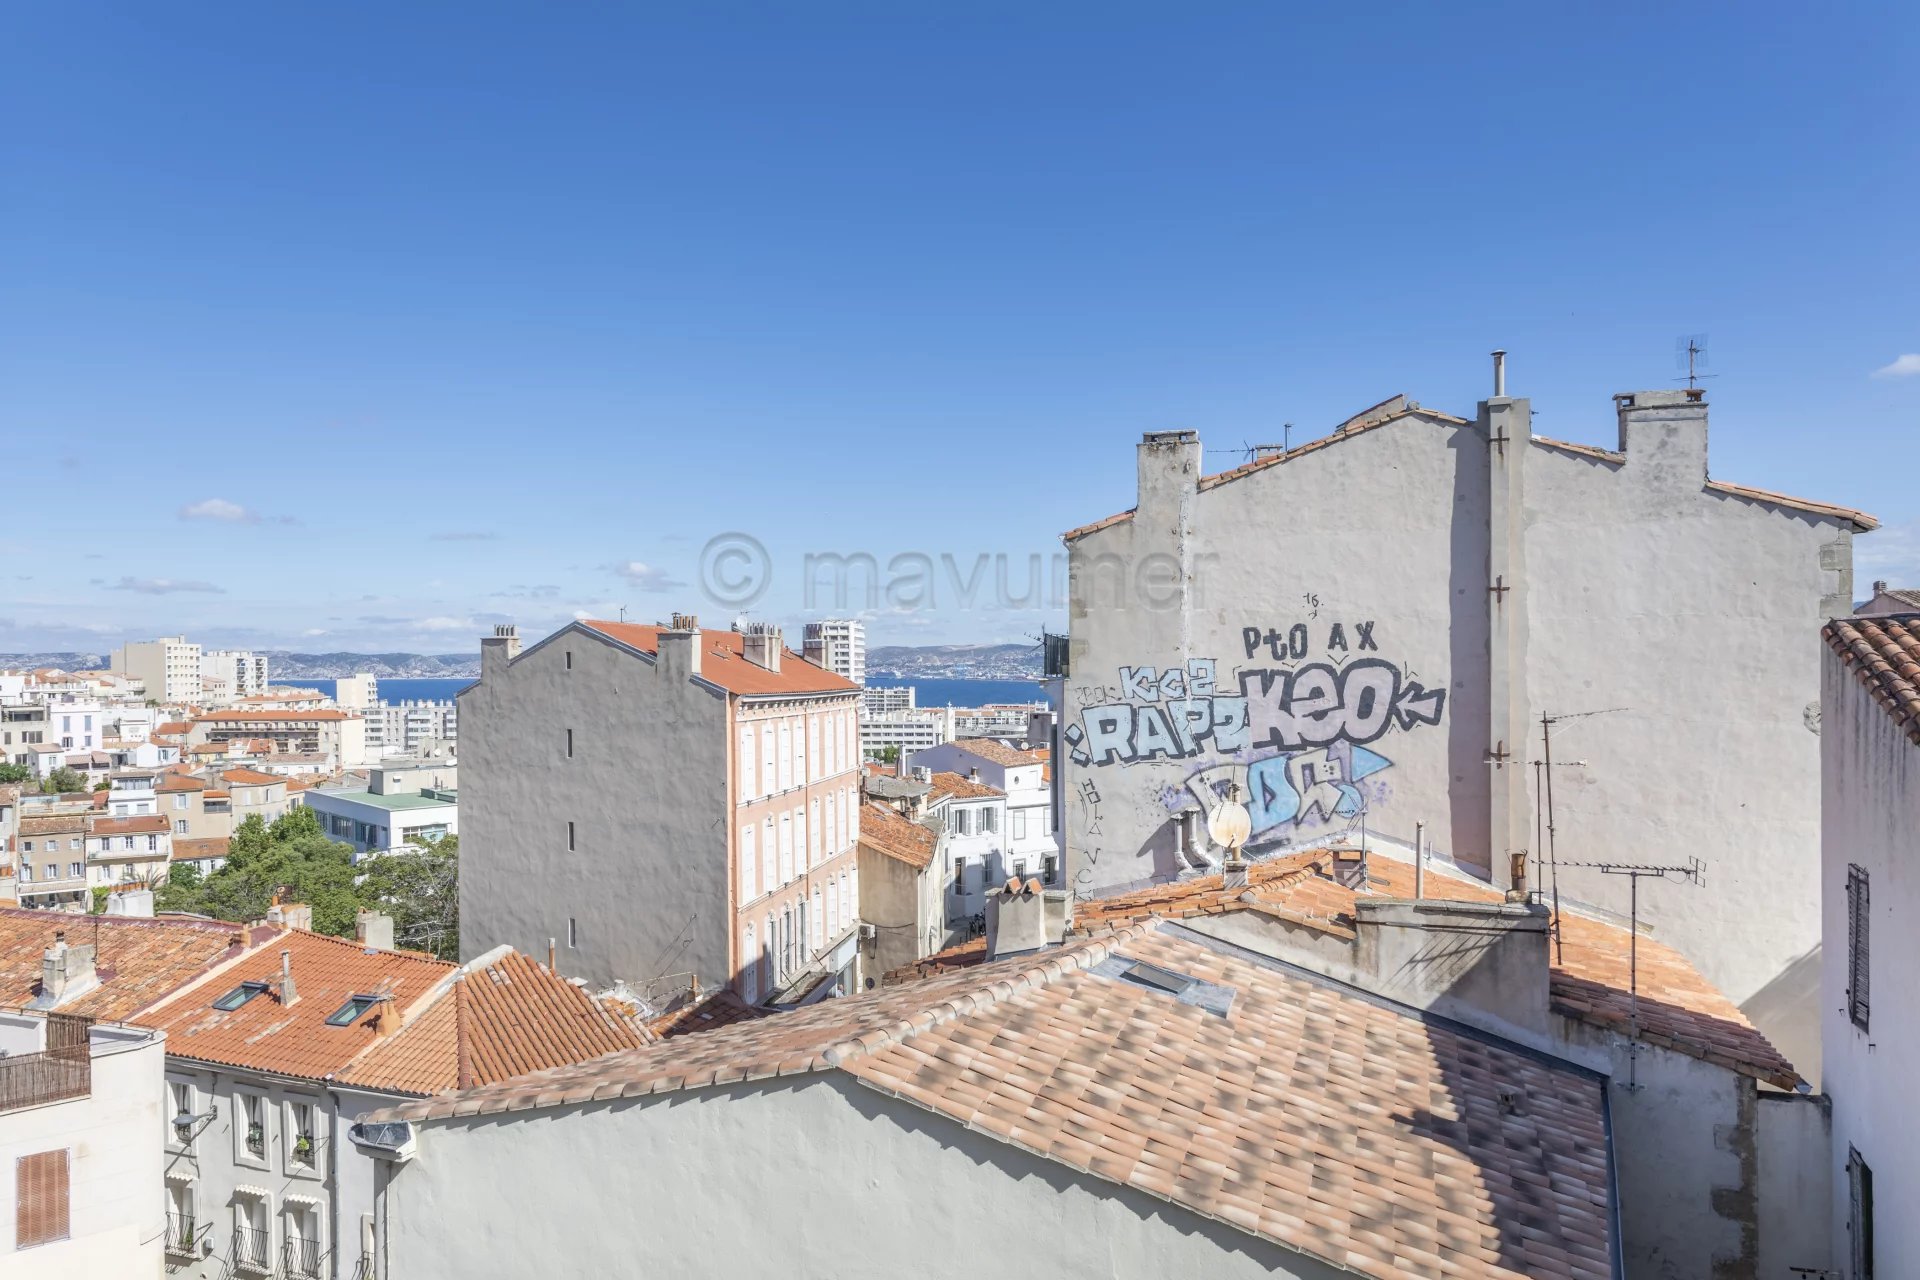 Sale Apartment - Marseille 7ème Bompard